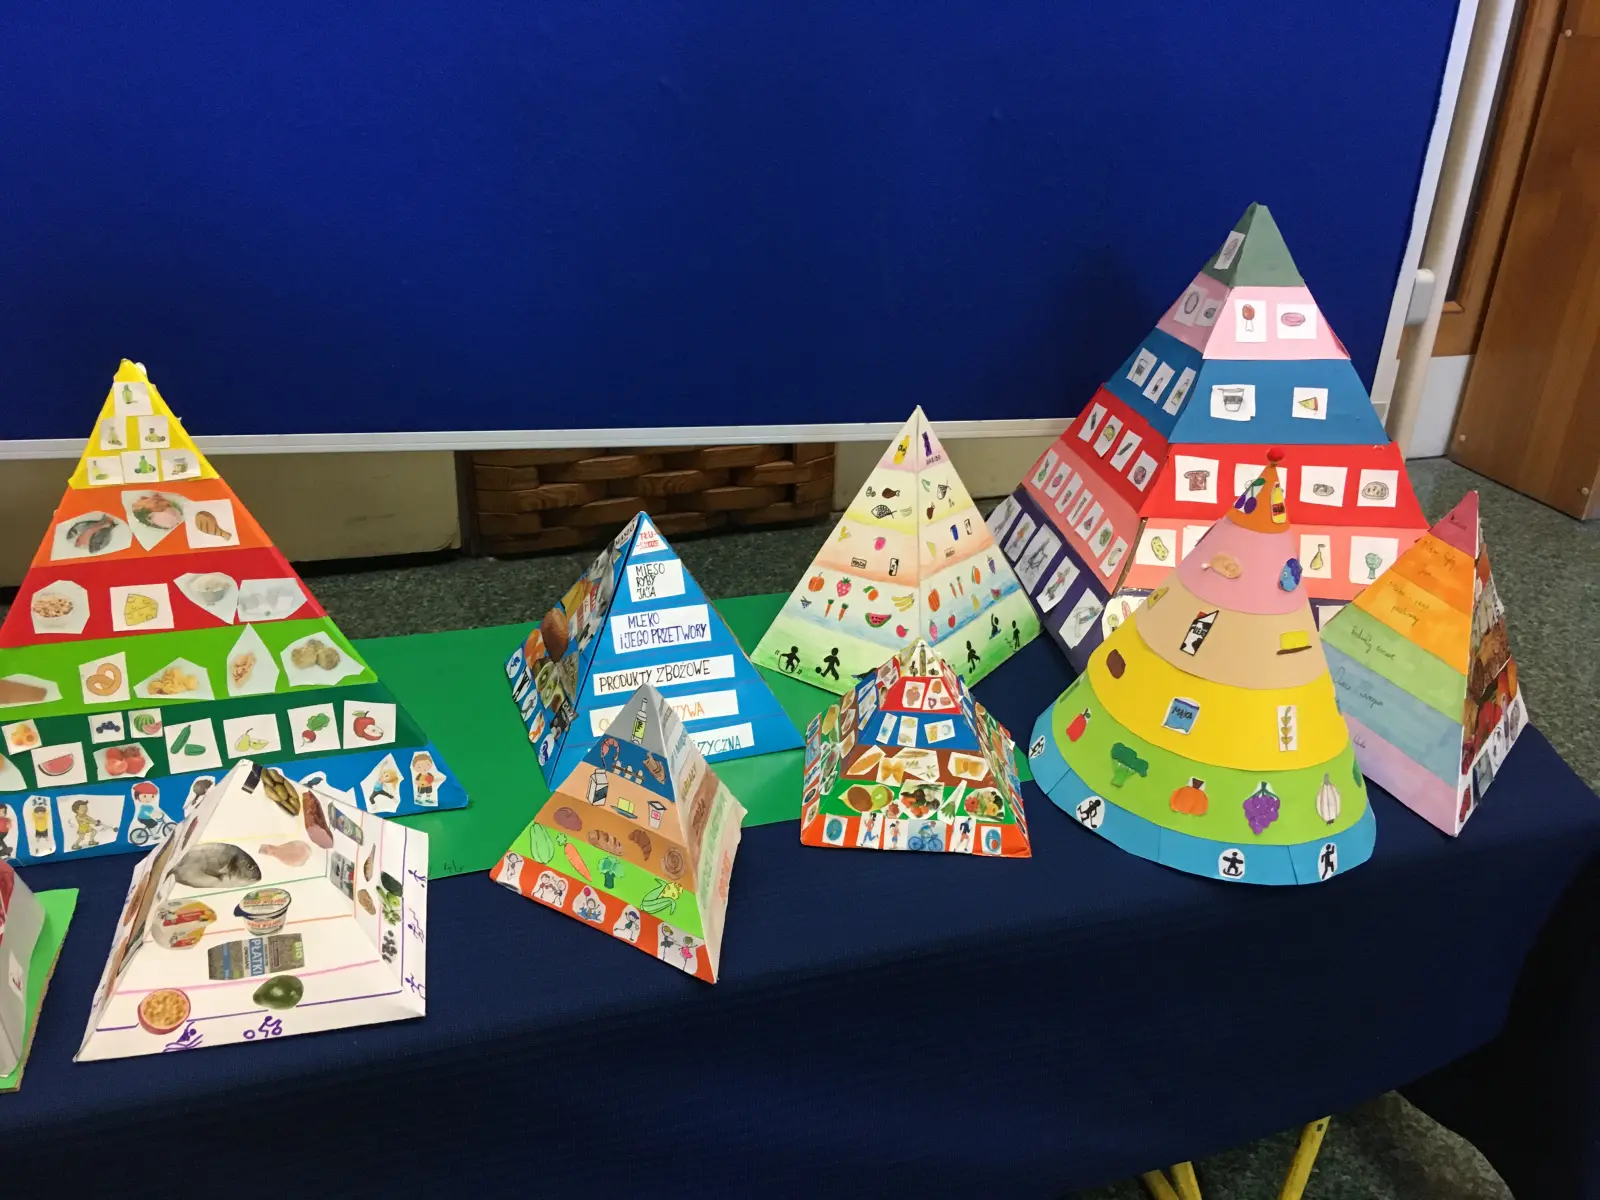 Kolorowe piramidy zdrowego odżywiania wykonane przez uczniów klas czwartych